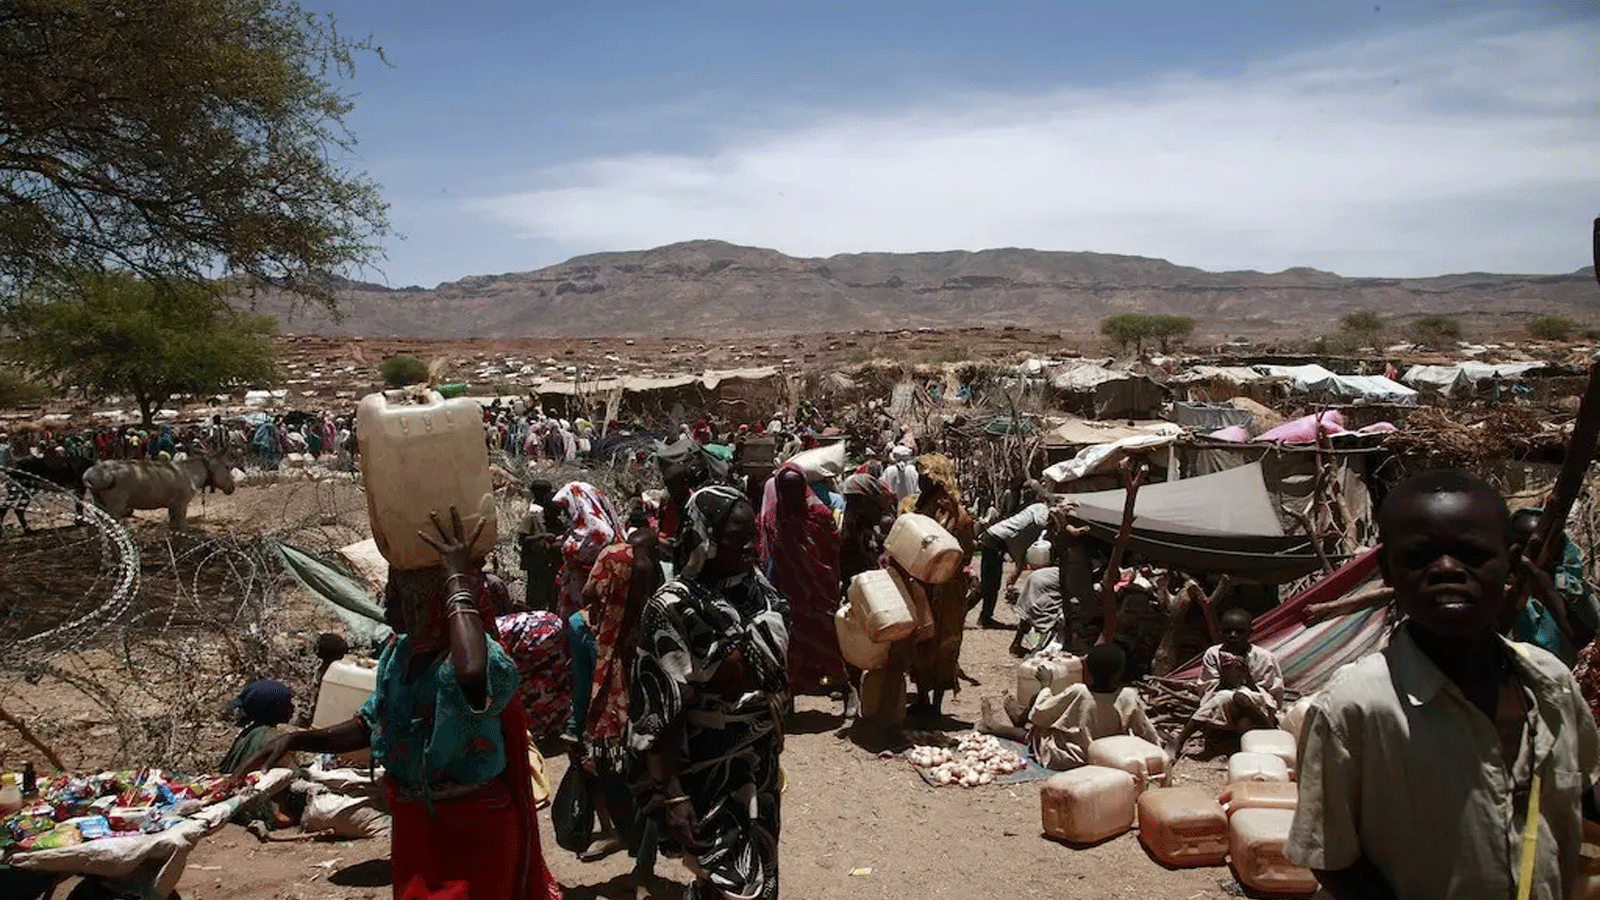 عشرات الآلاف من النازحين الجدد من قراهم يفرون بسبب الاشتباكات المستمرة بين القوات الحكومية السودانية والحركات المسلحة، والتي بدأت في يناير 2016 في منطقة جبل مرة. سورتوني، شمال دارفور(unamid)